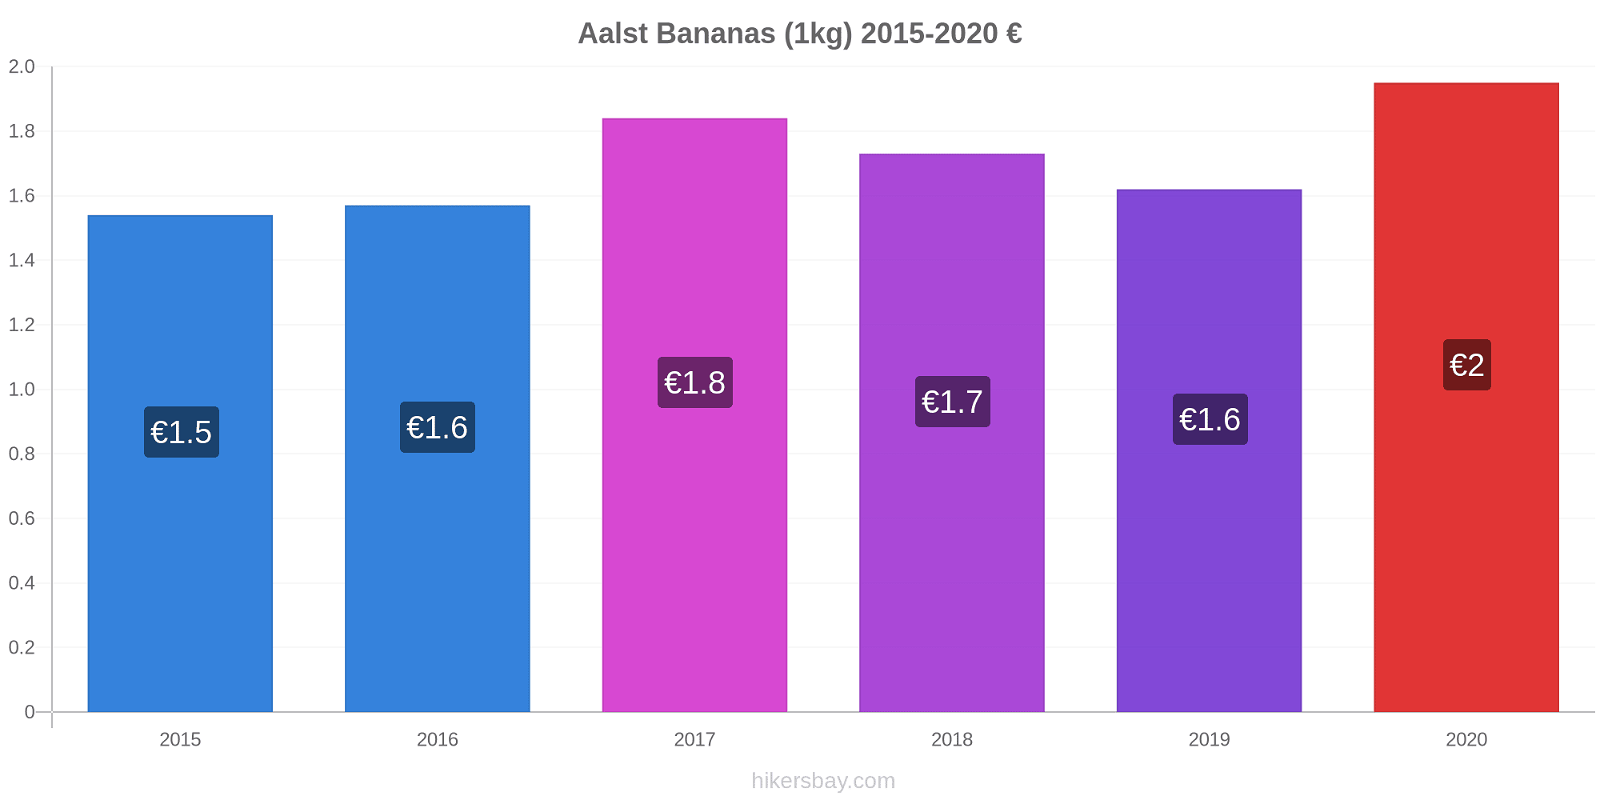 Aalst variação de preço Banana (1kg) hikersbay.com